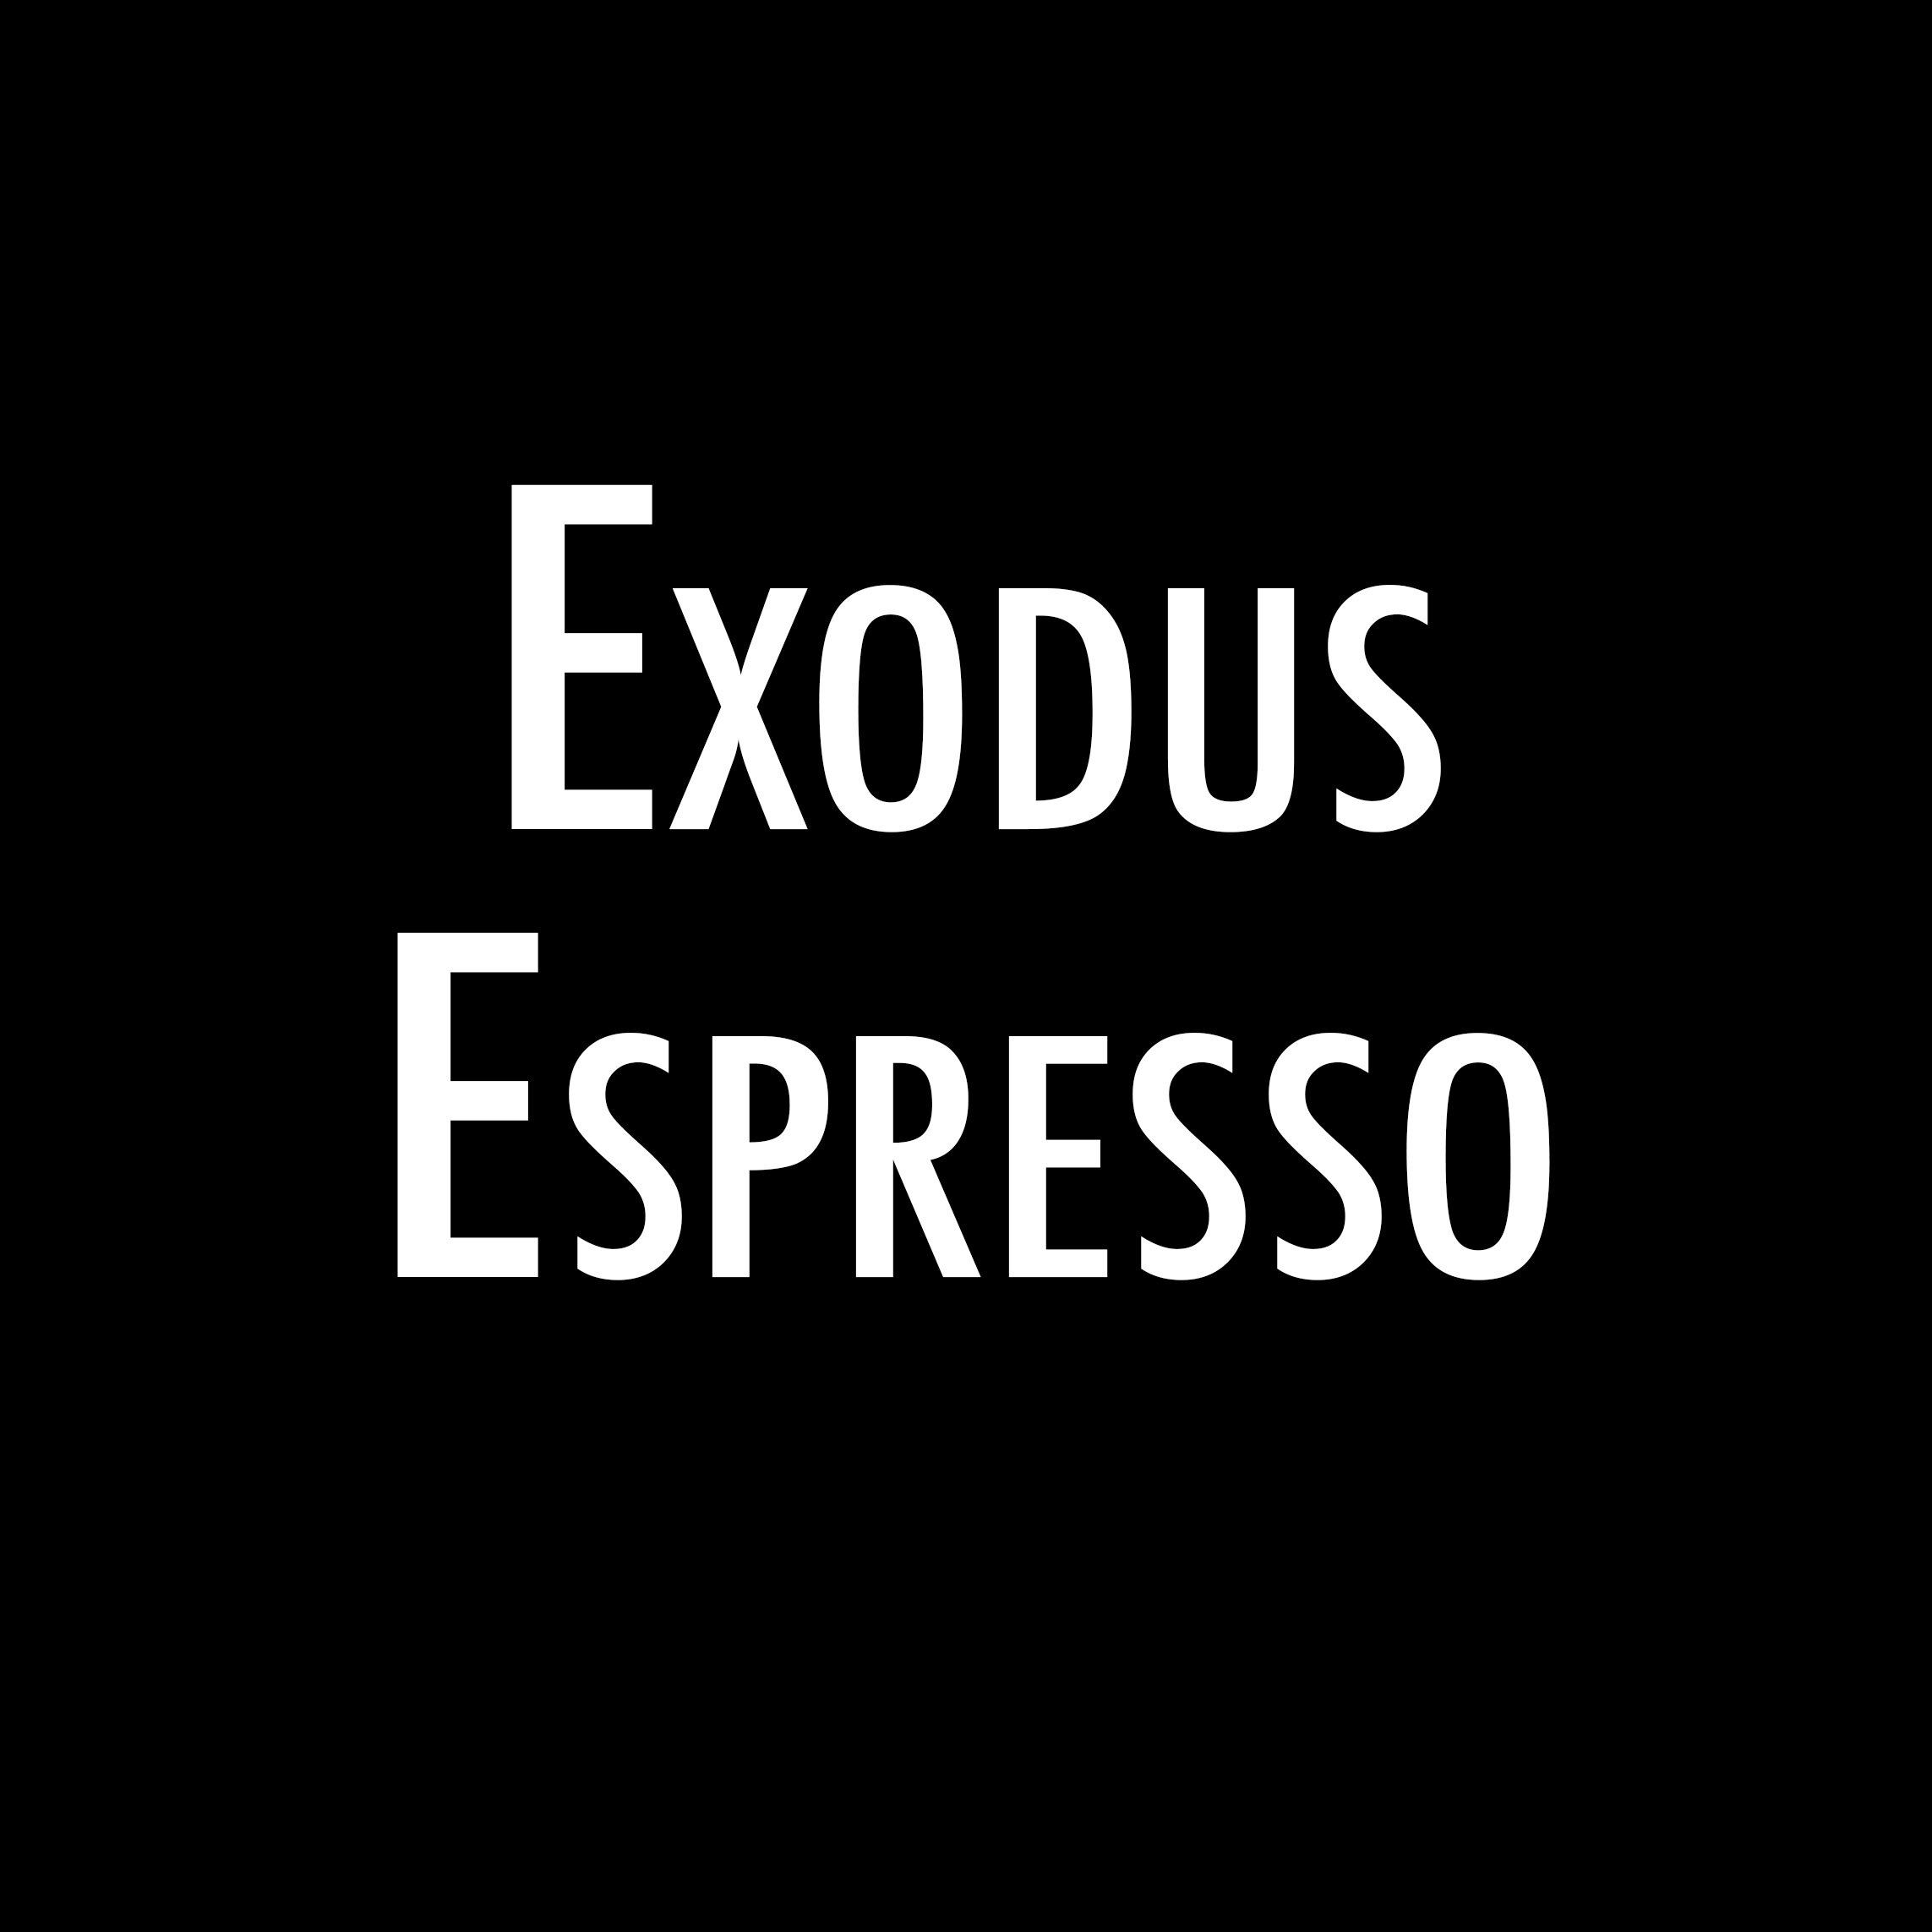 Exodus Espresso